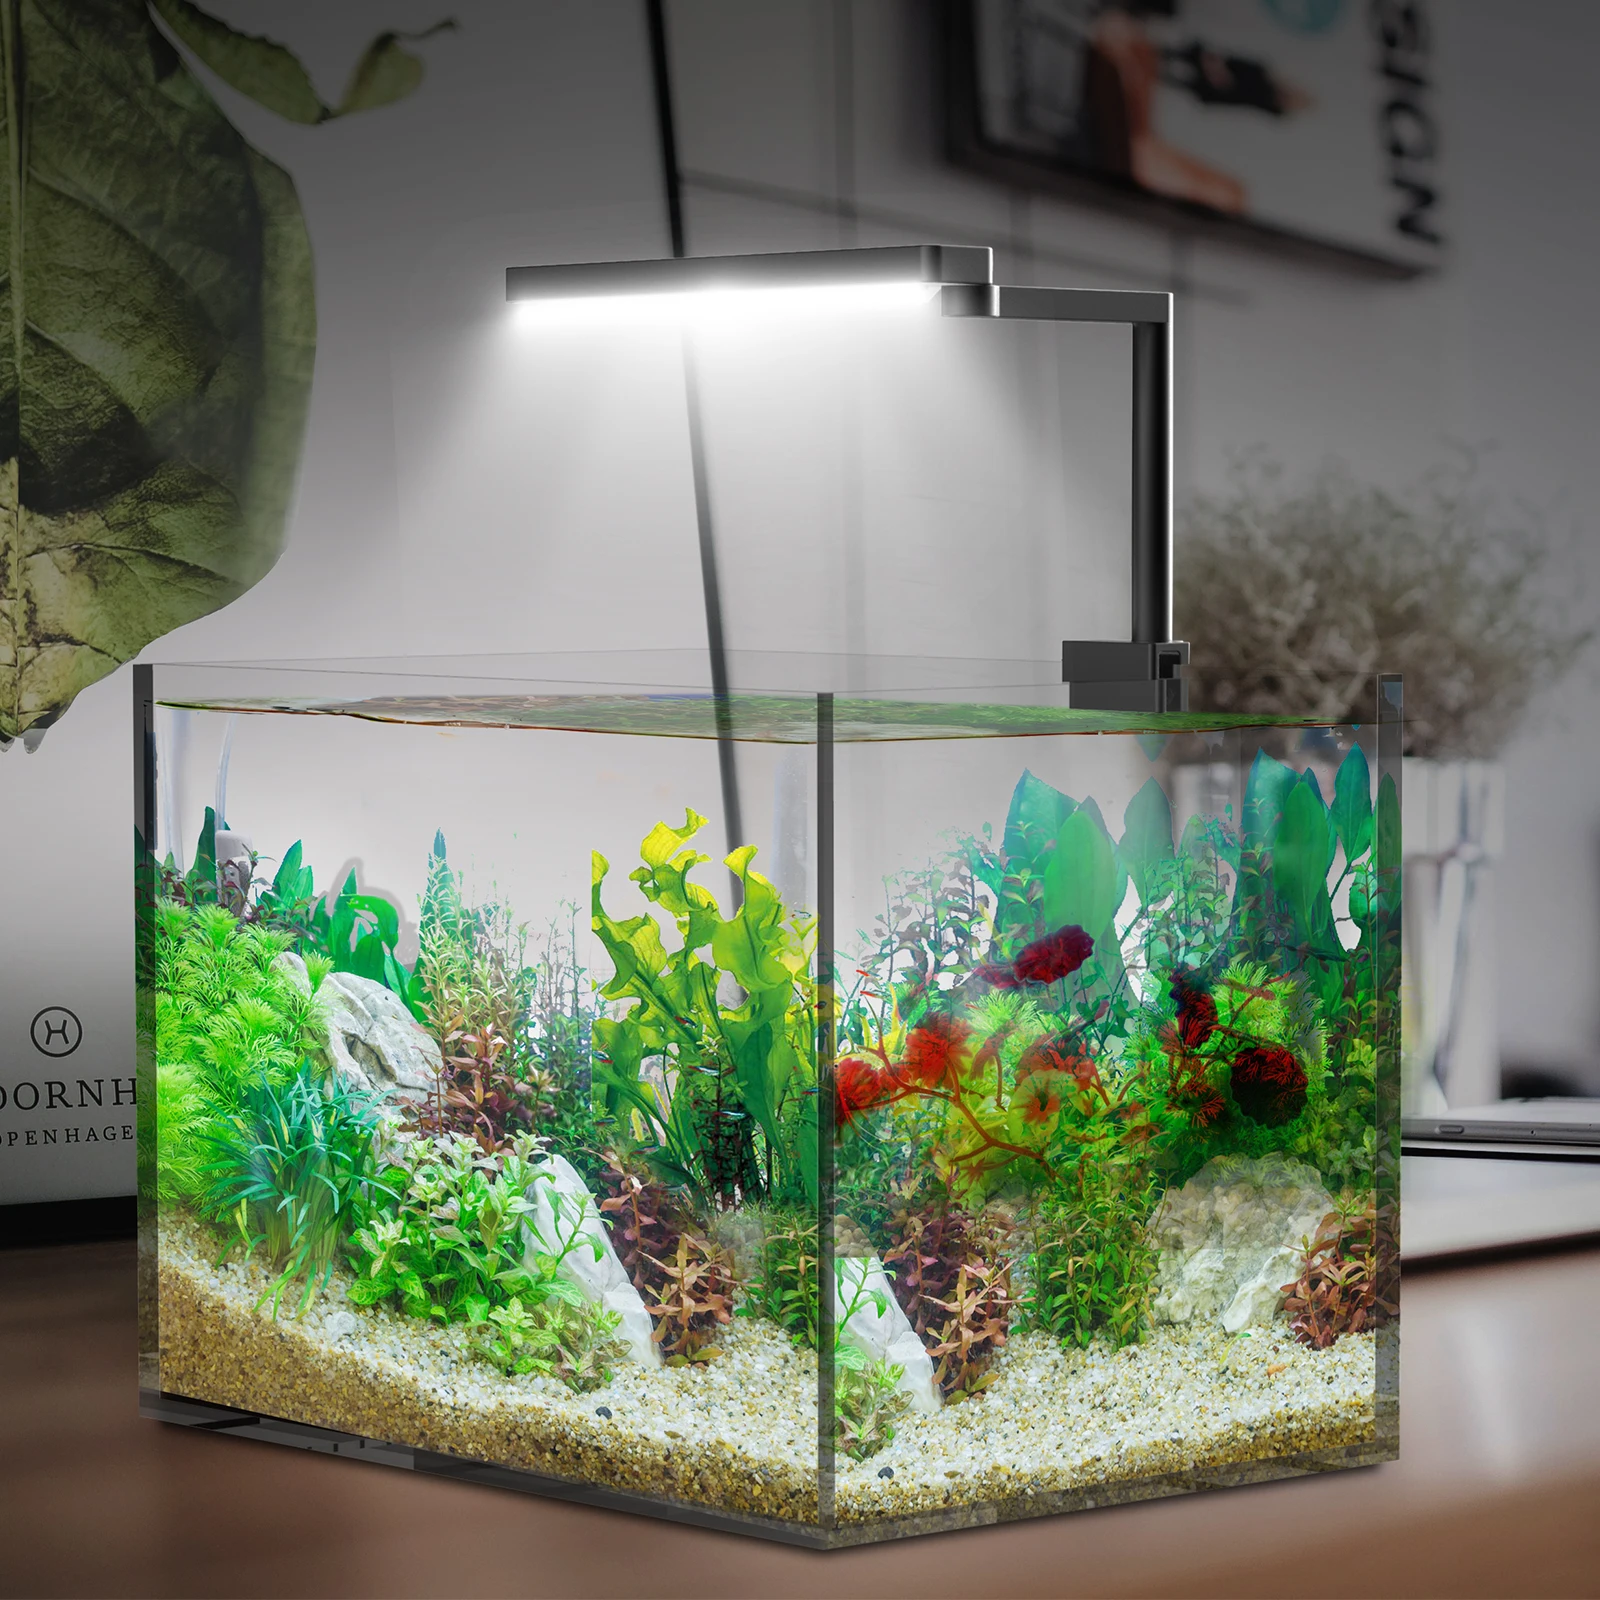 

Chihiros C2 Full Spectrum Dimmable Aquarium LED Light with Bluetooth Controller Built-in Suite for Mini Nano Aquatic Tanks